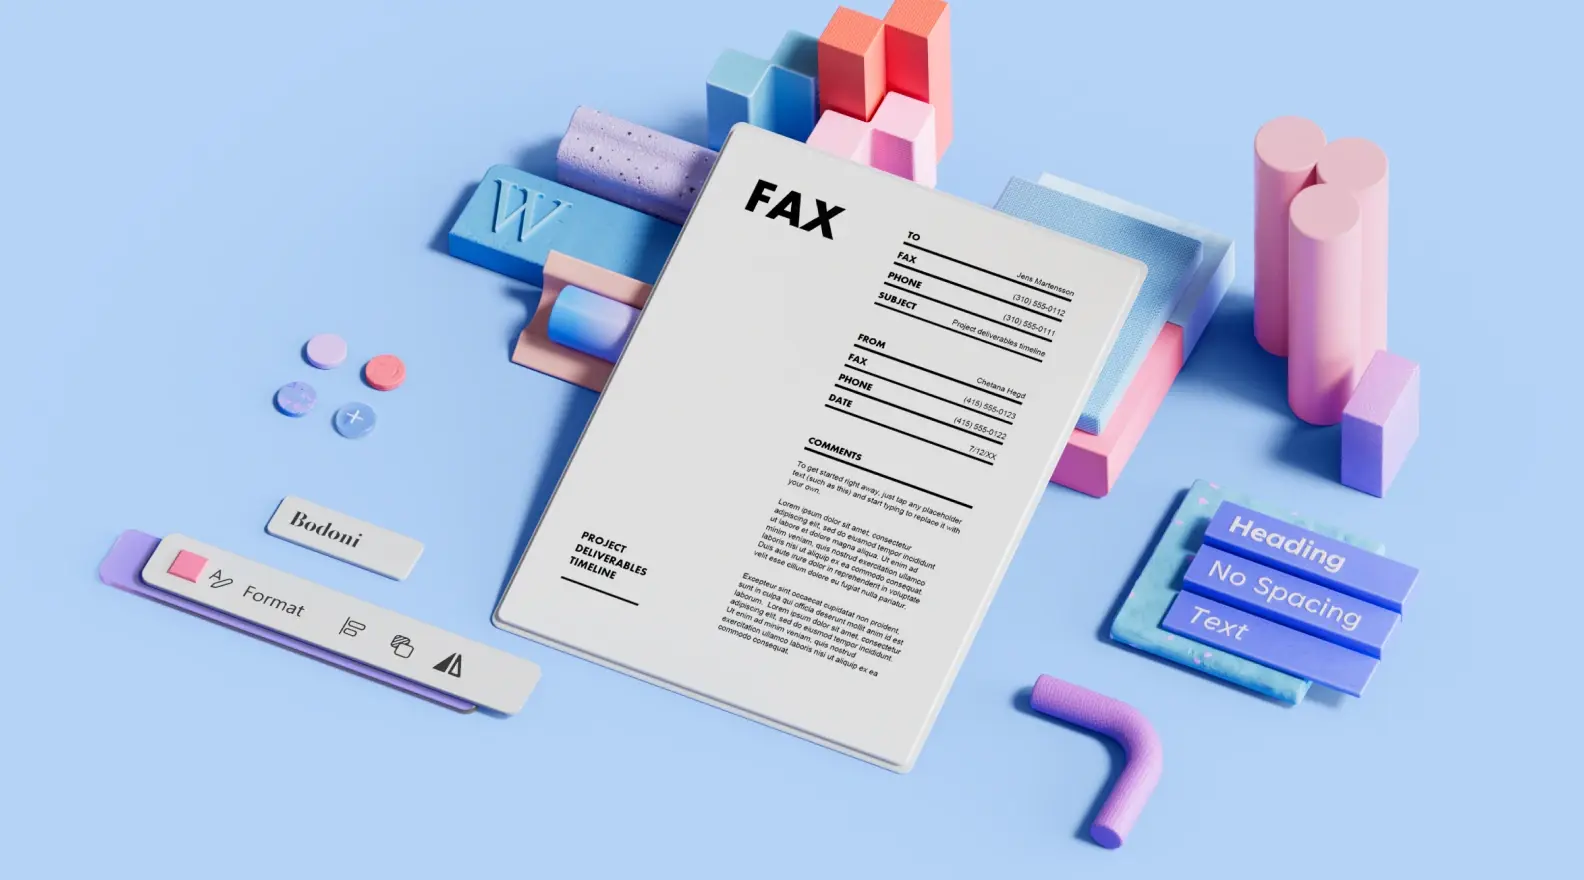 Šablona titulní stránky faxu obklopená prvky 3D návrhu